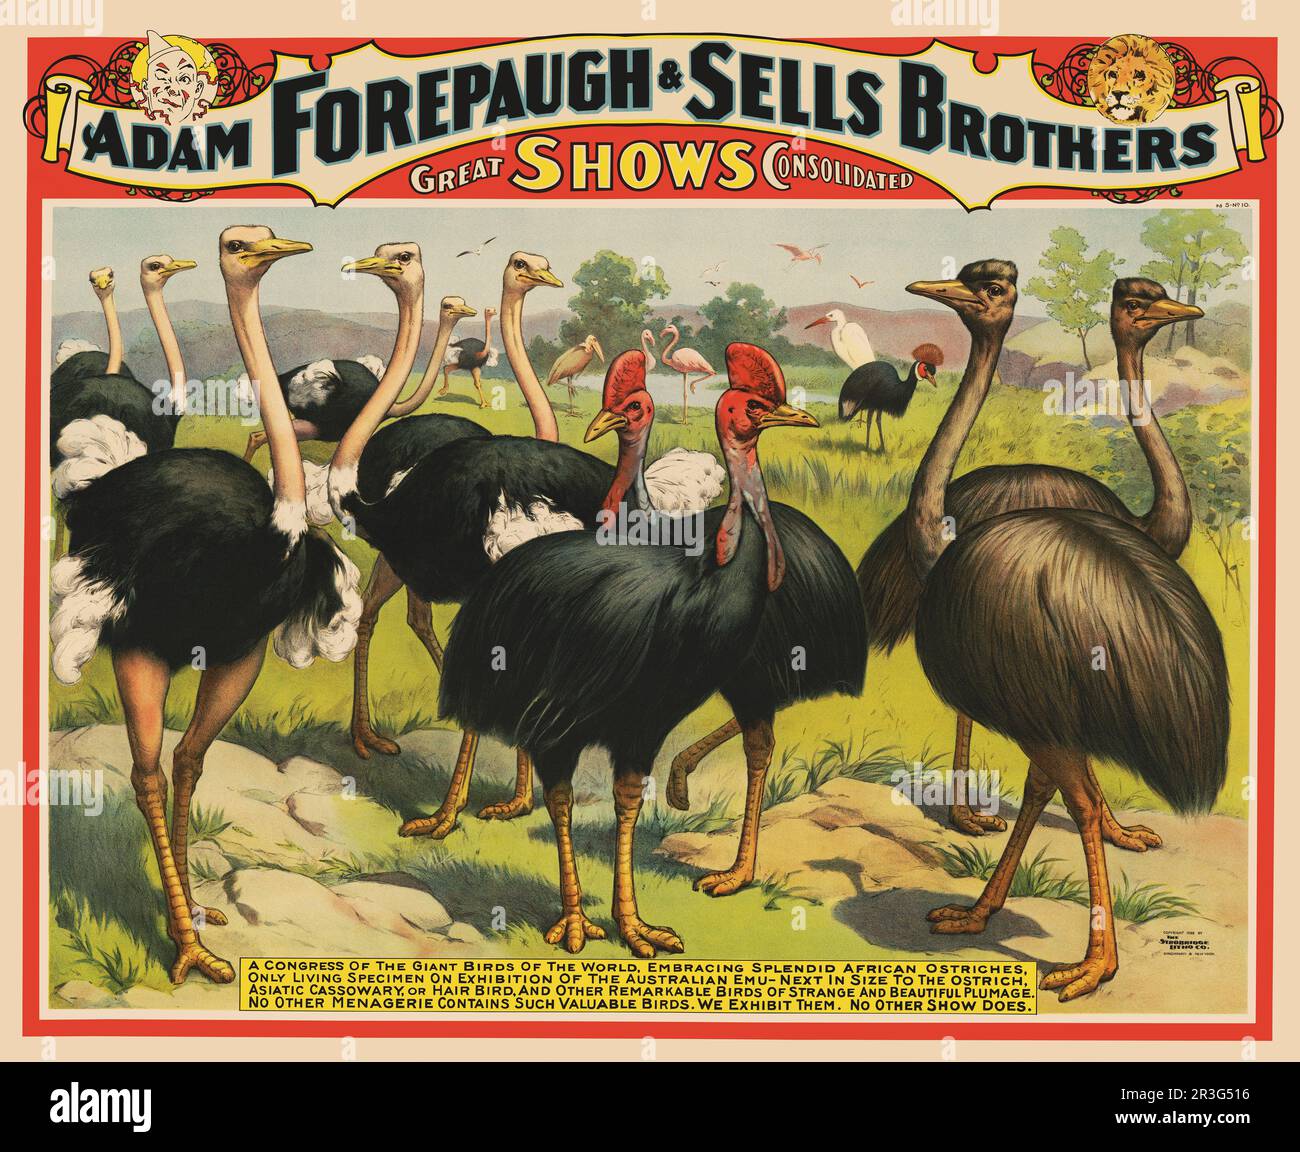 Affiche de cirque vintage pour Adam Forepaugh & vend Brothers, montrant des autruches et d'autres grands oiseaux. Banque D'Images